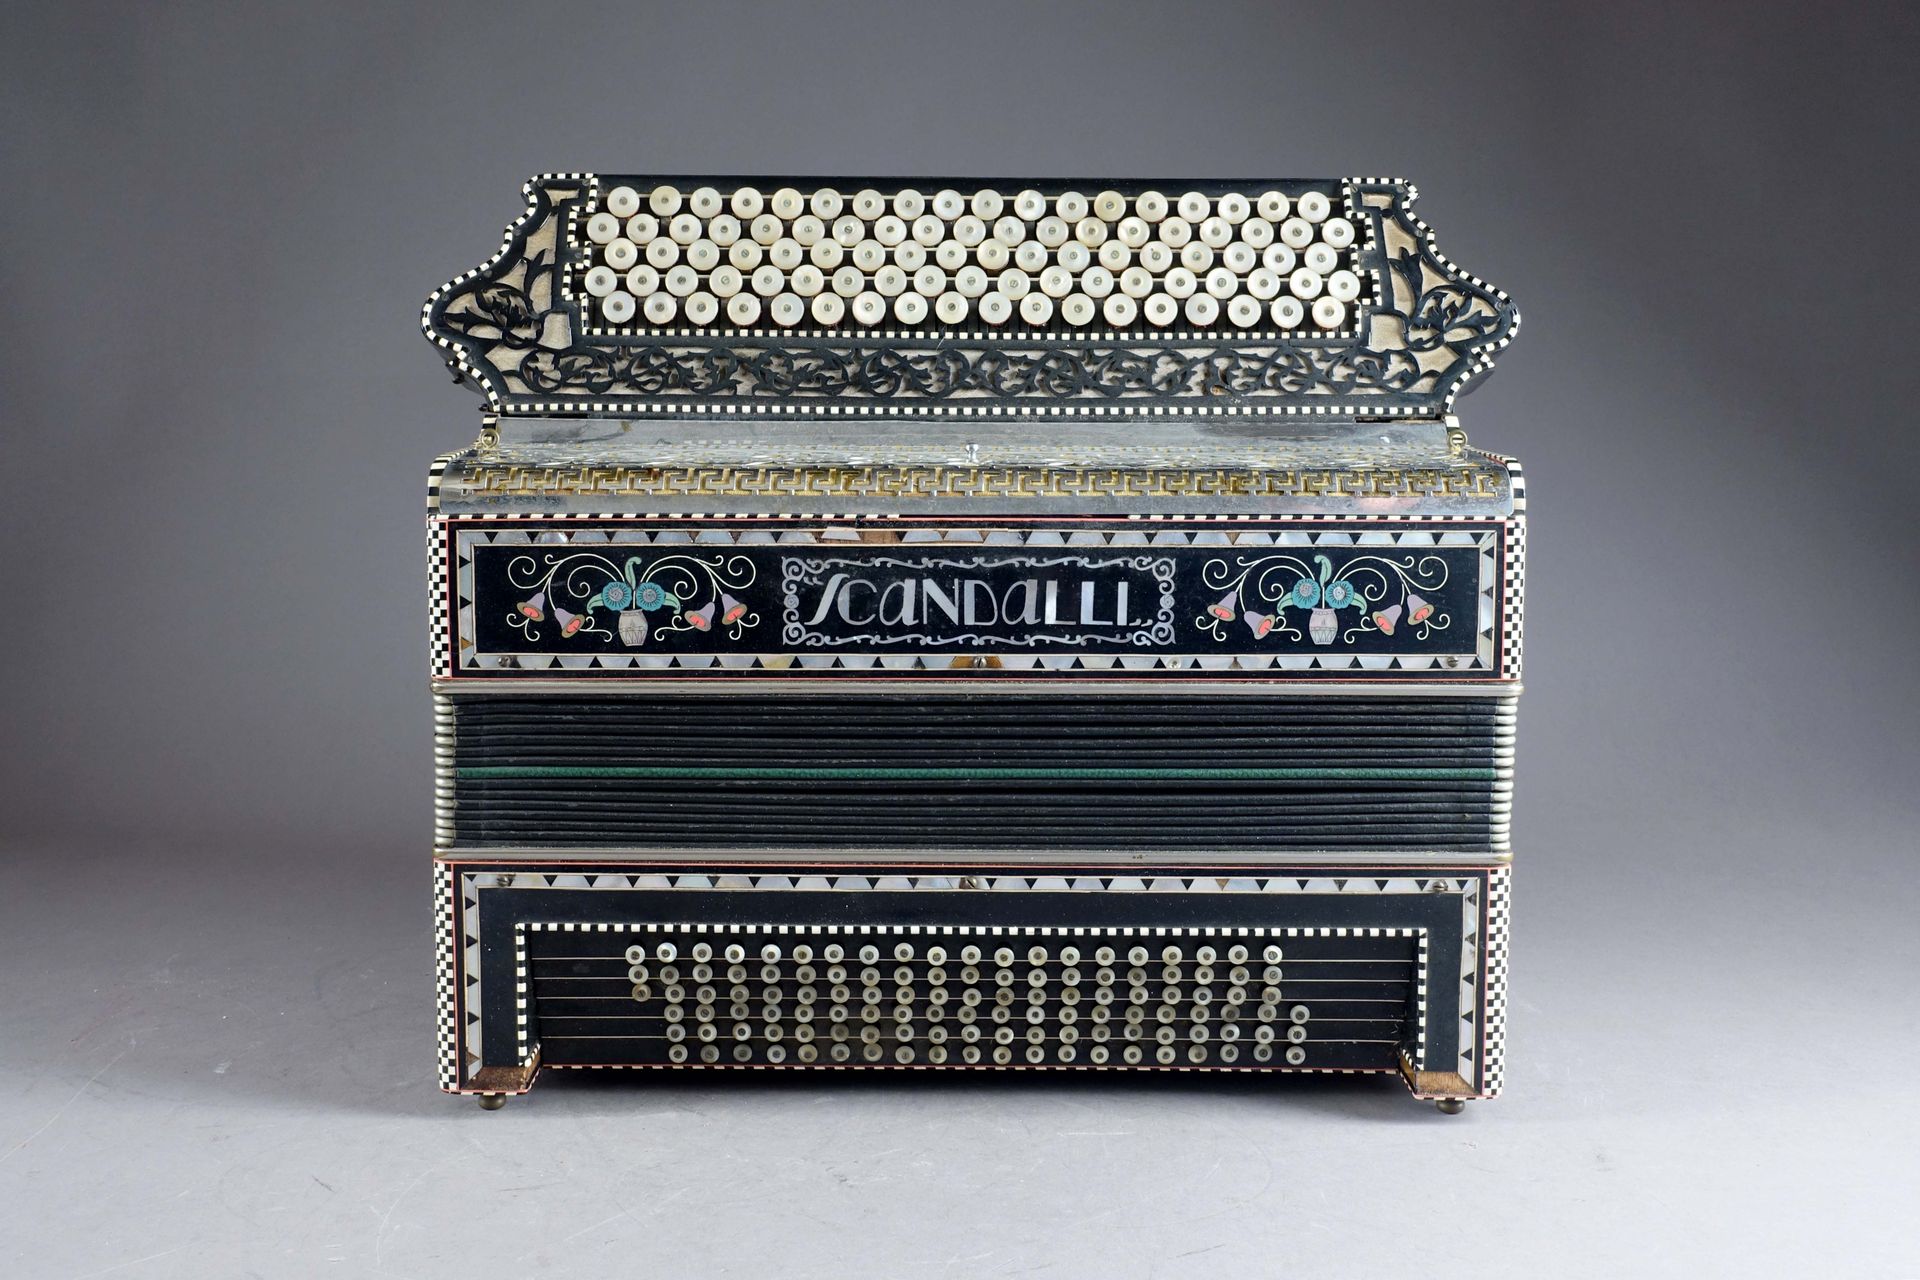 Scandalli. 手风琴。珍珠贝母键盘。镶嵌木头和镀铬金属。意大利。20世纪上半叶。尺寸：44 x 38 x 24厘米。狀況報告 : 鑲嵌物有一些缺口。